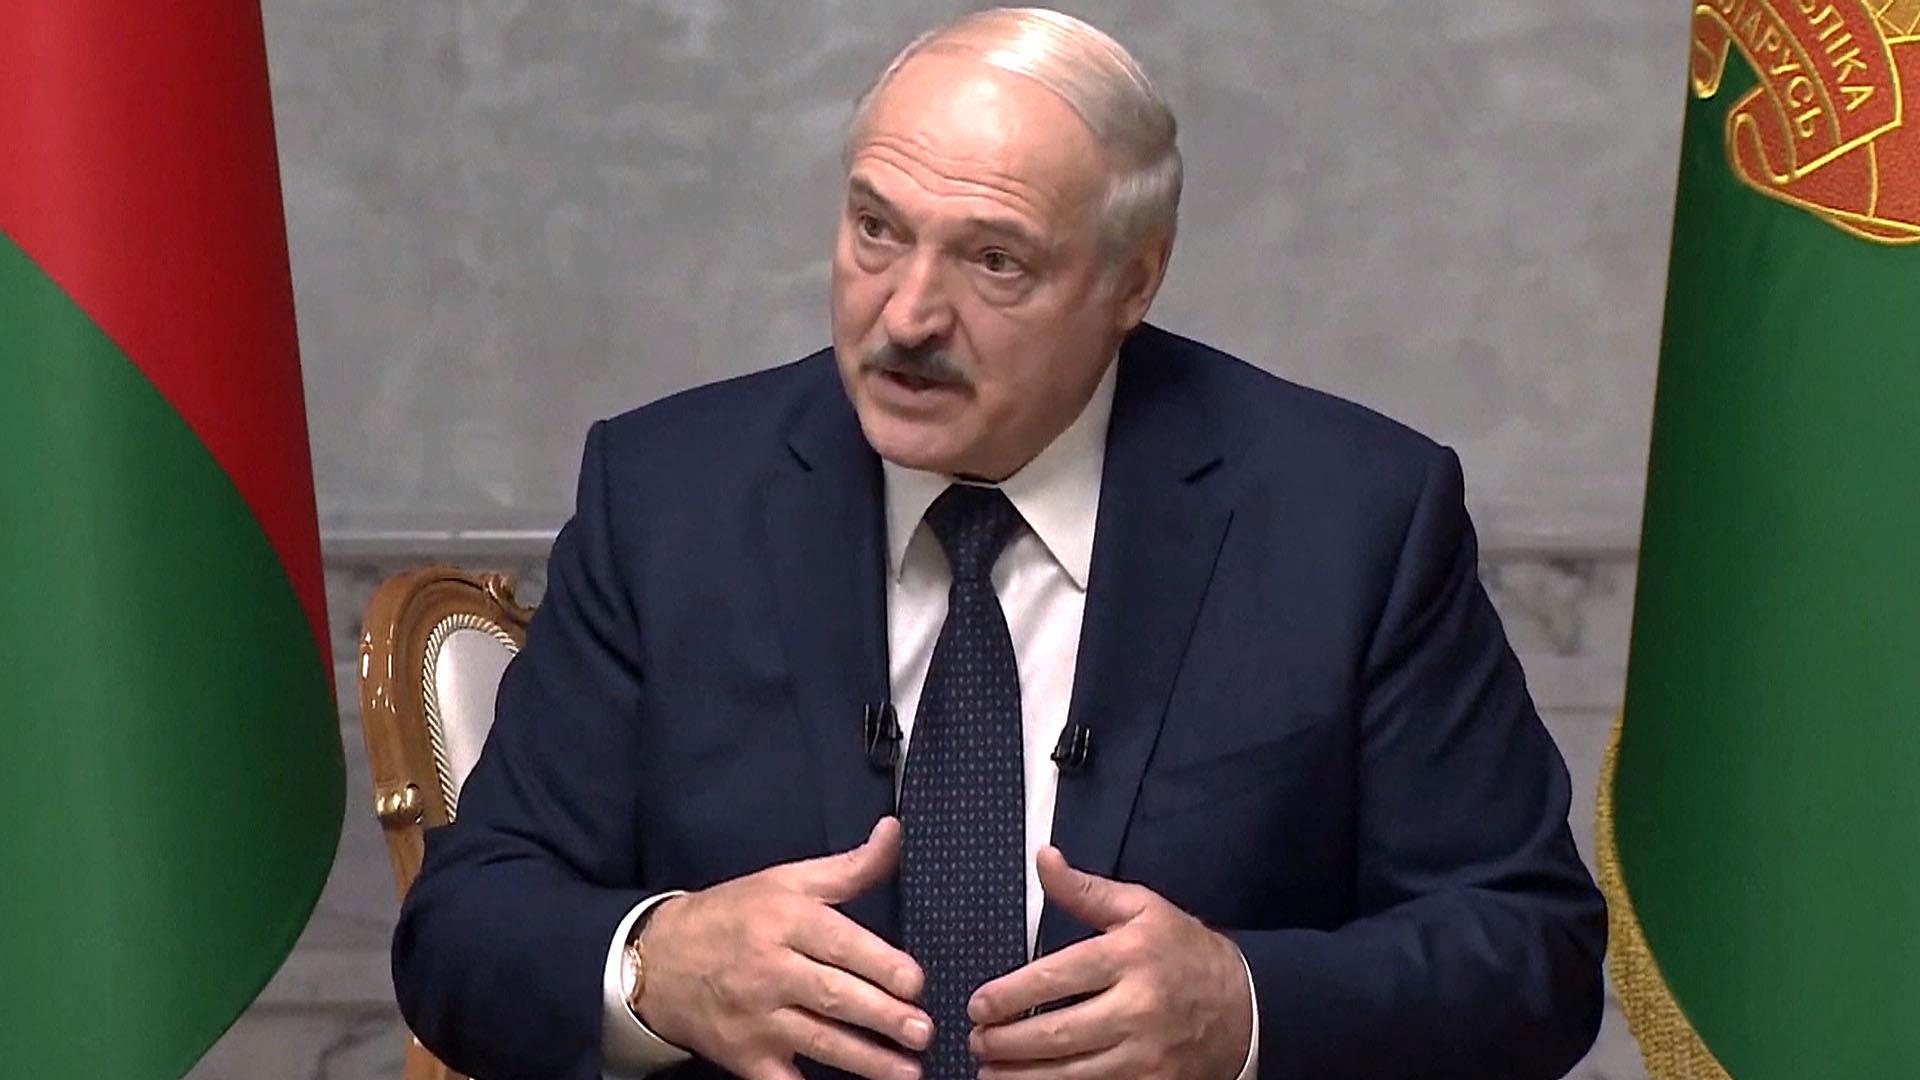 Лукашенко ответил на призыв Путина к диалогу с оппозицией сравнением Тихановской и Навального